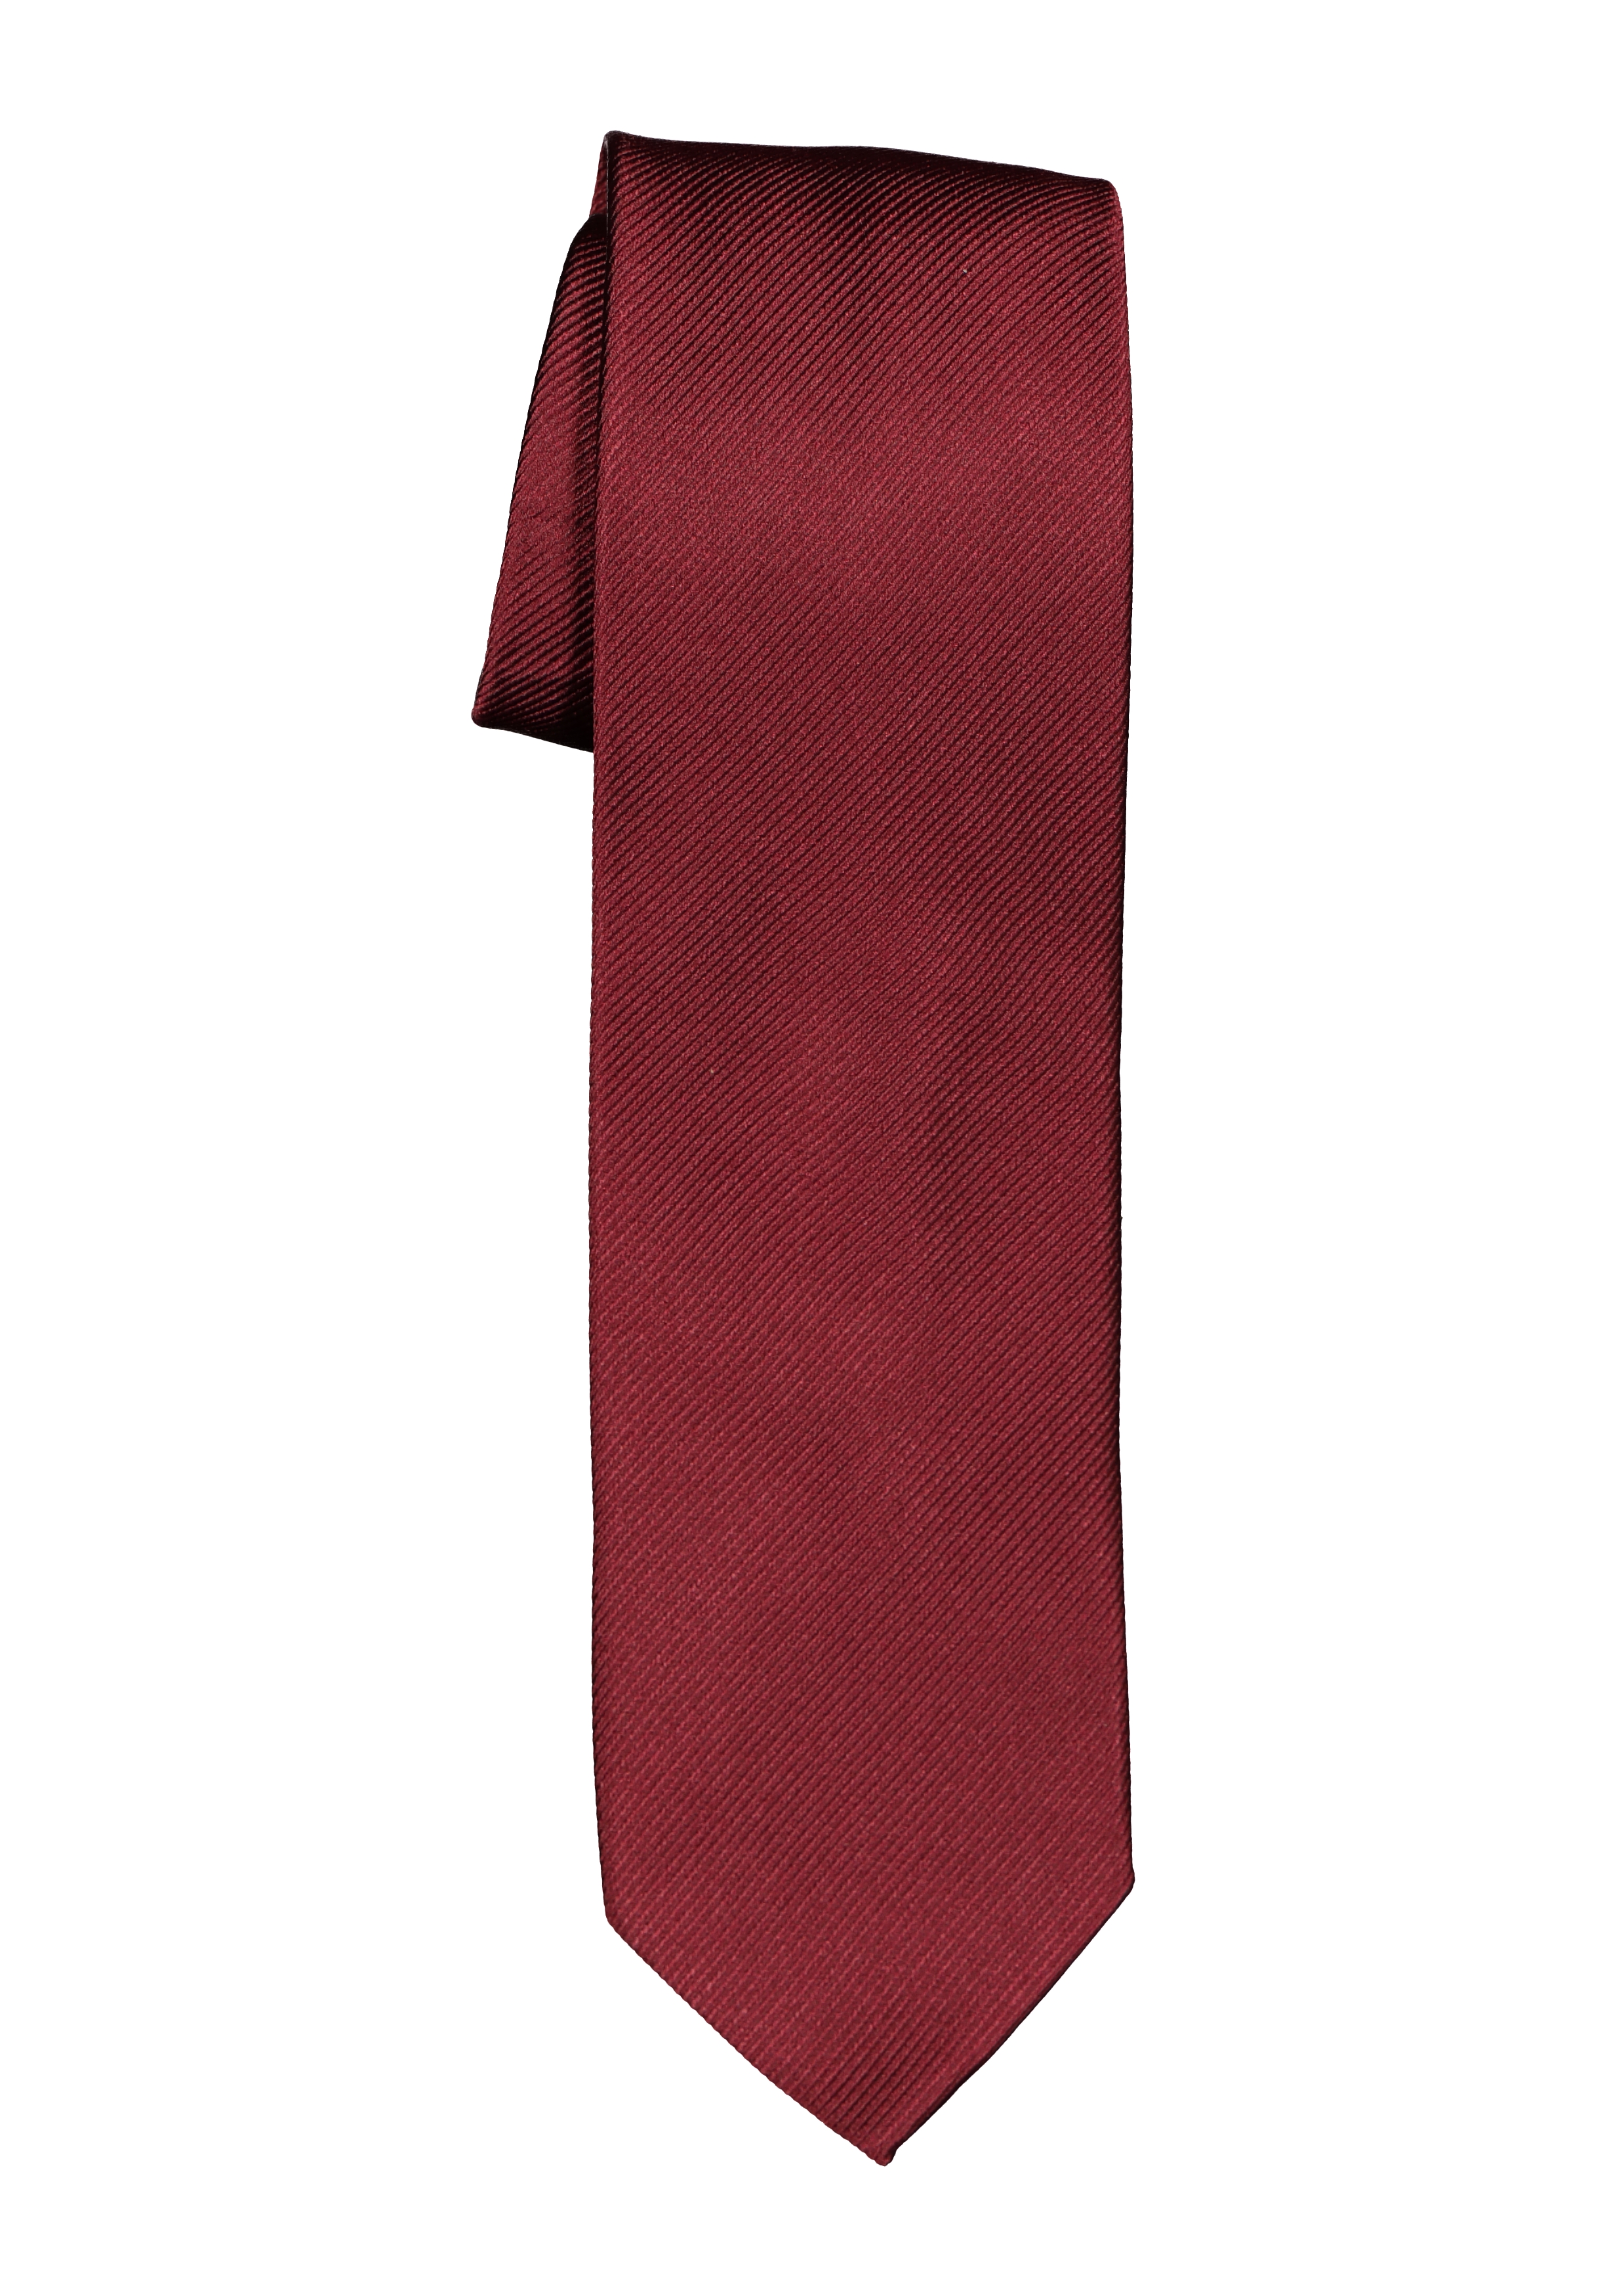 Promoten analogie Boven hoofd en schouder Michaelis smalle stropdas, bordeaux rood - Zomer SALE tot 70% korting